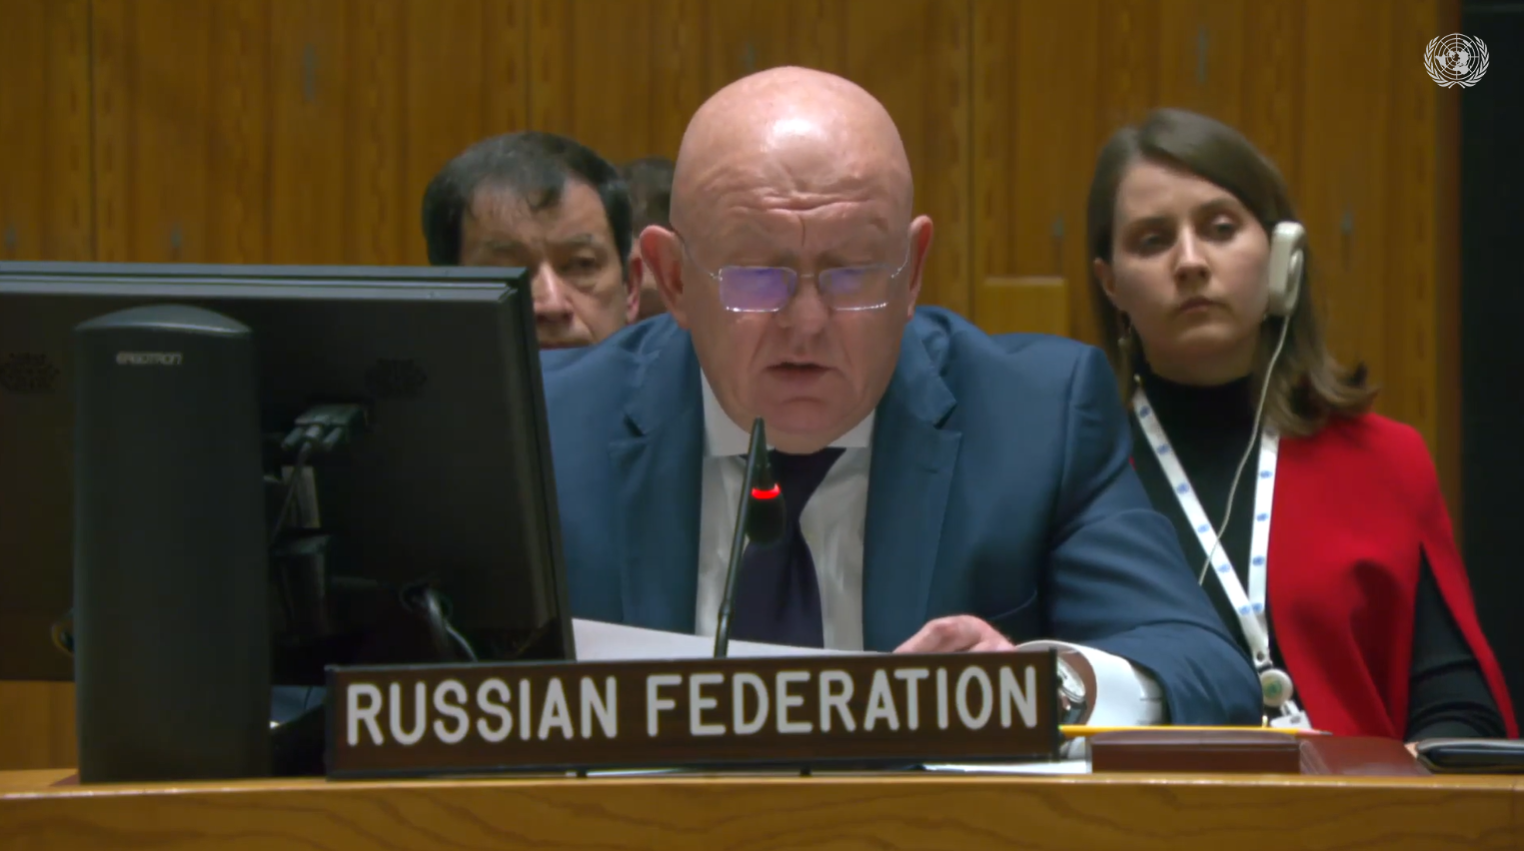 현지 시각 30일, 긴급 유엔 안전보장이사회에서 바실리 네벤쟈 러시아 대표가 발언하고 있다